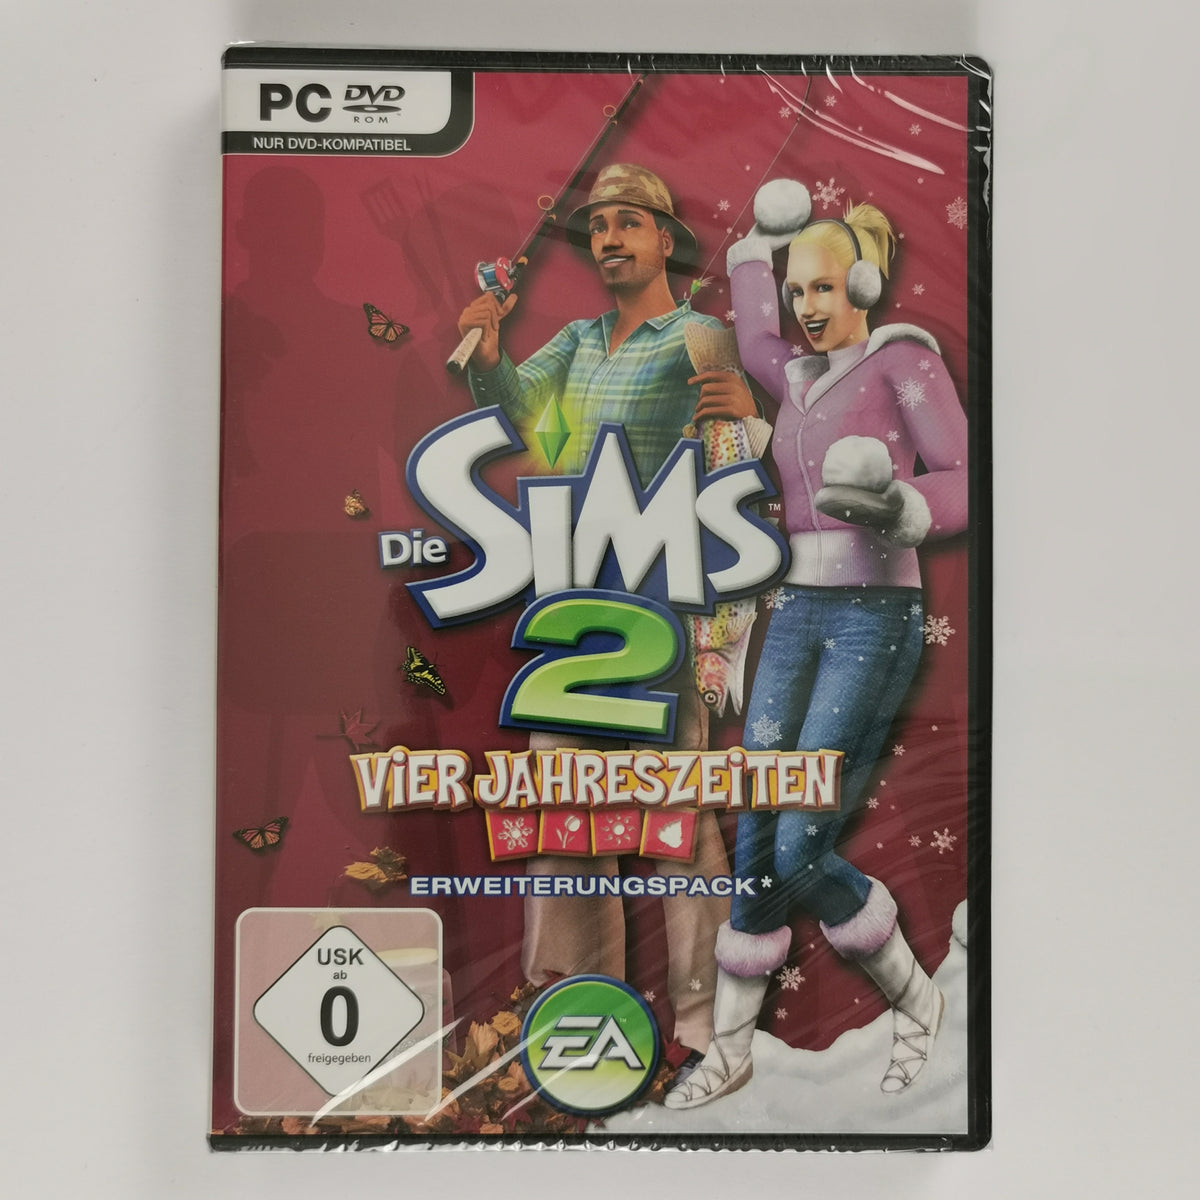 Die Sims 2: Vier Jahreszeiten [PC]